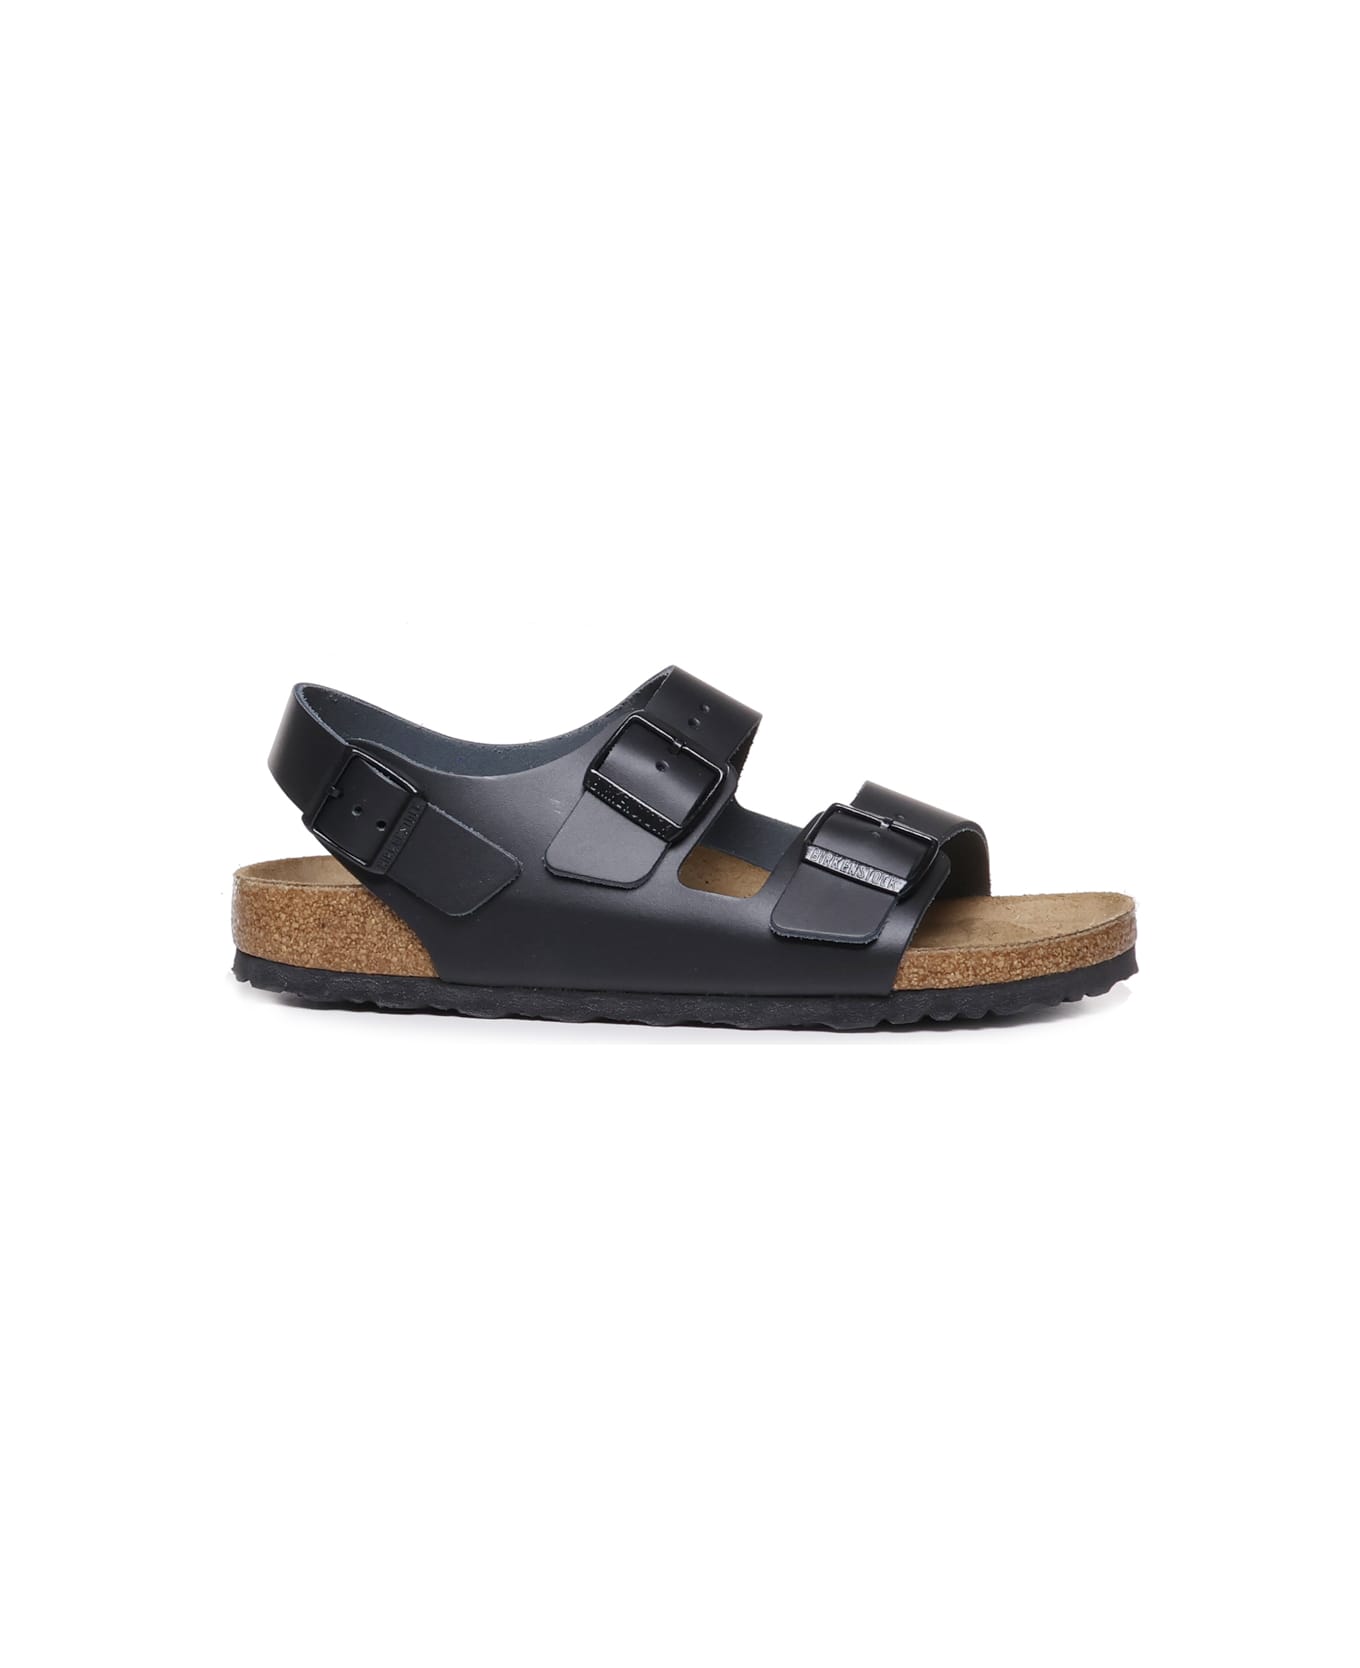 Birkenstock Milan Bs Sandals - Black